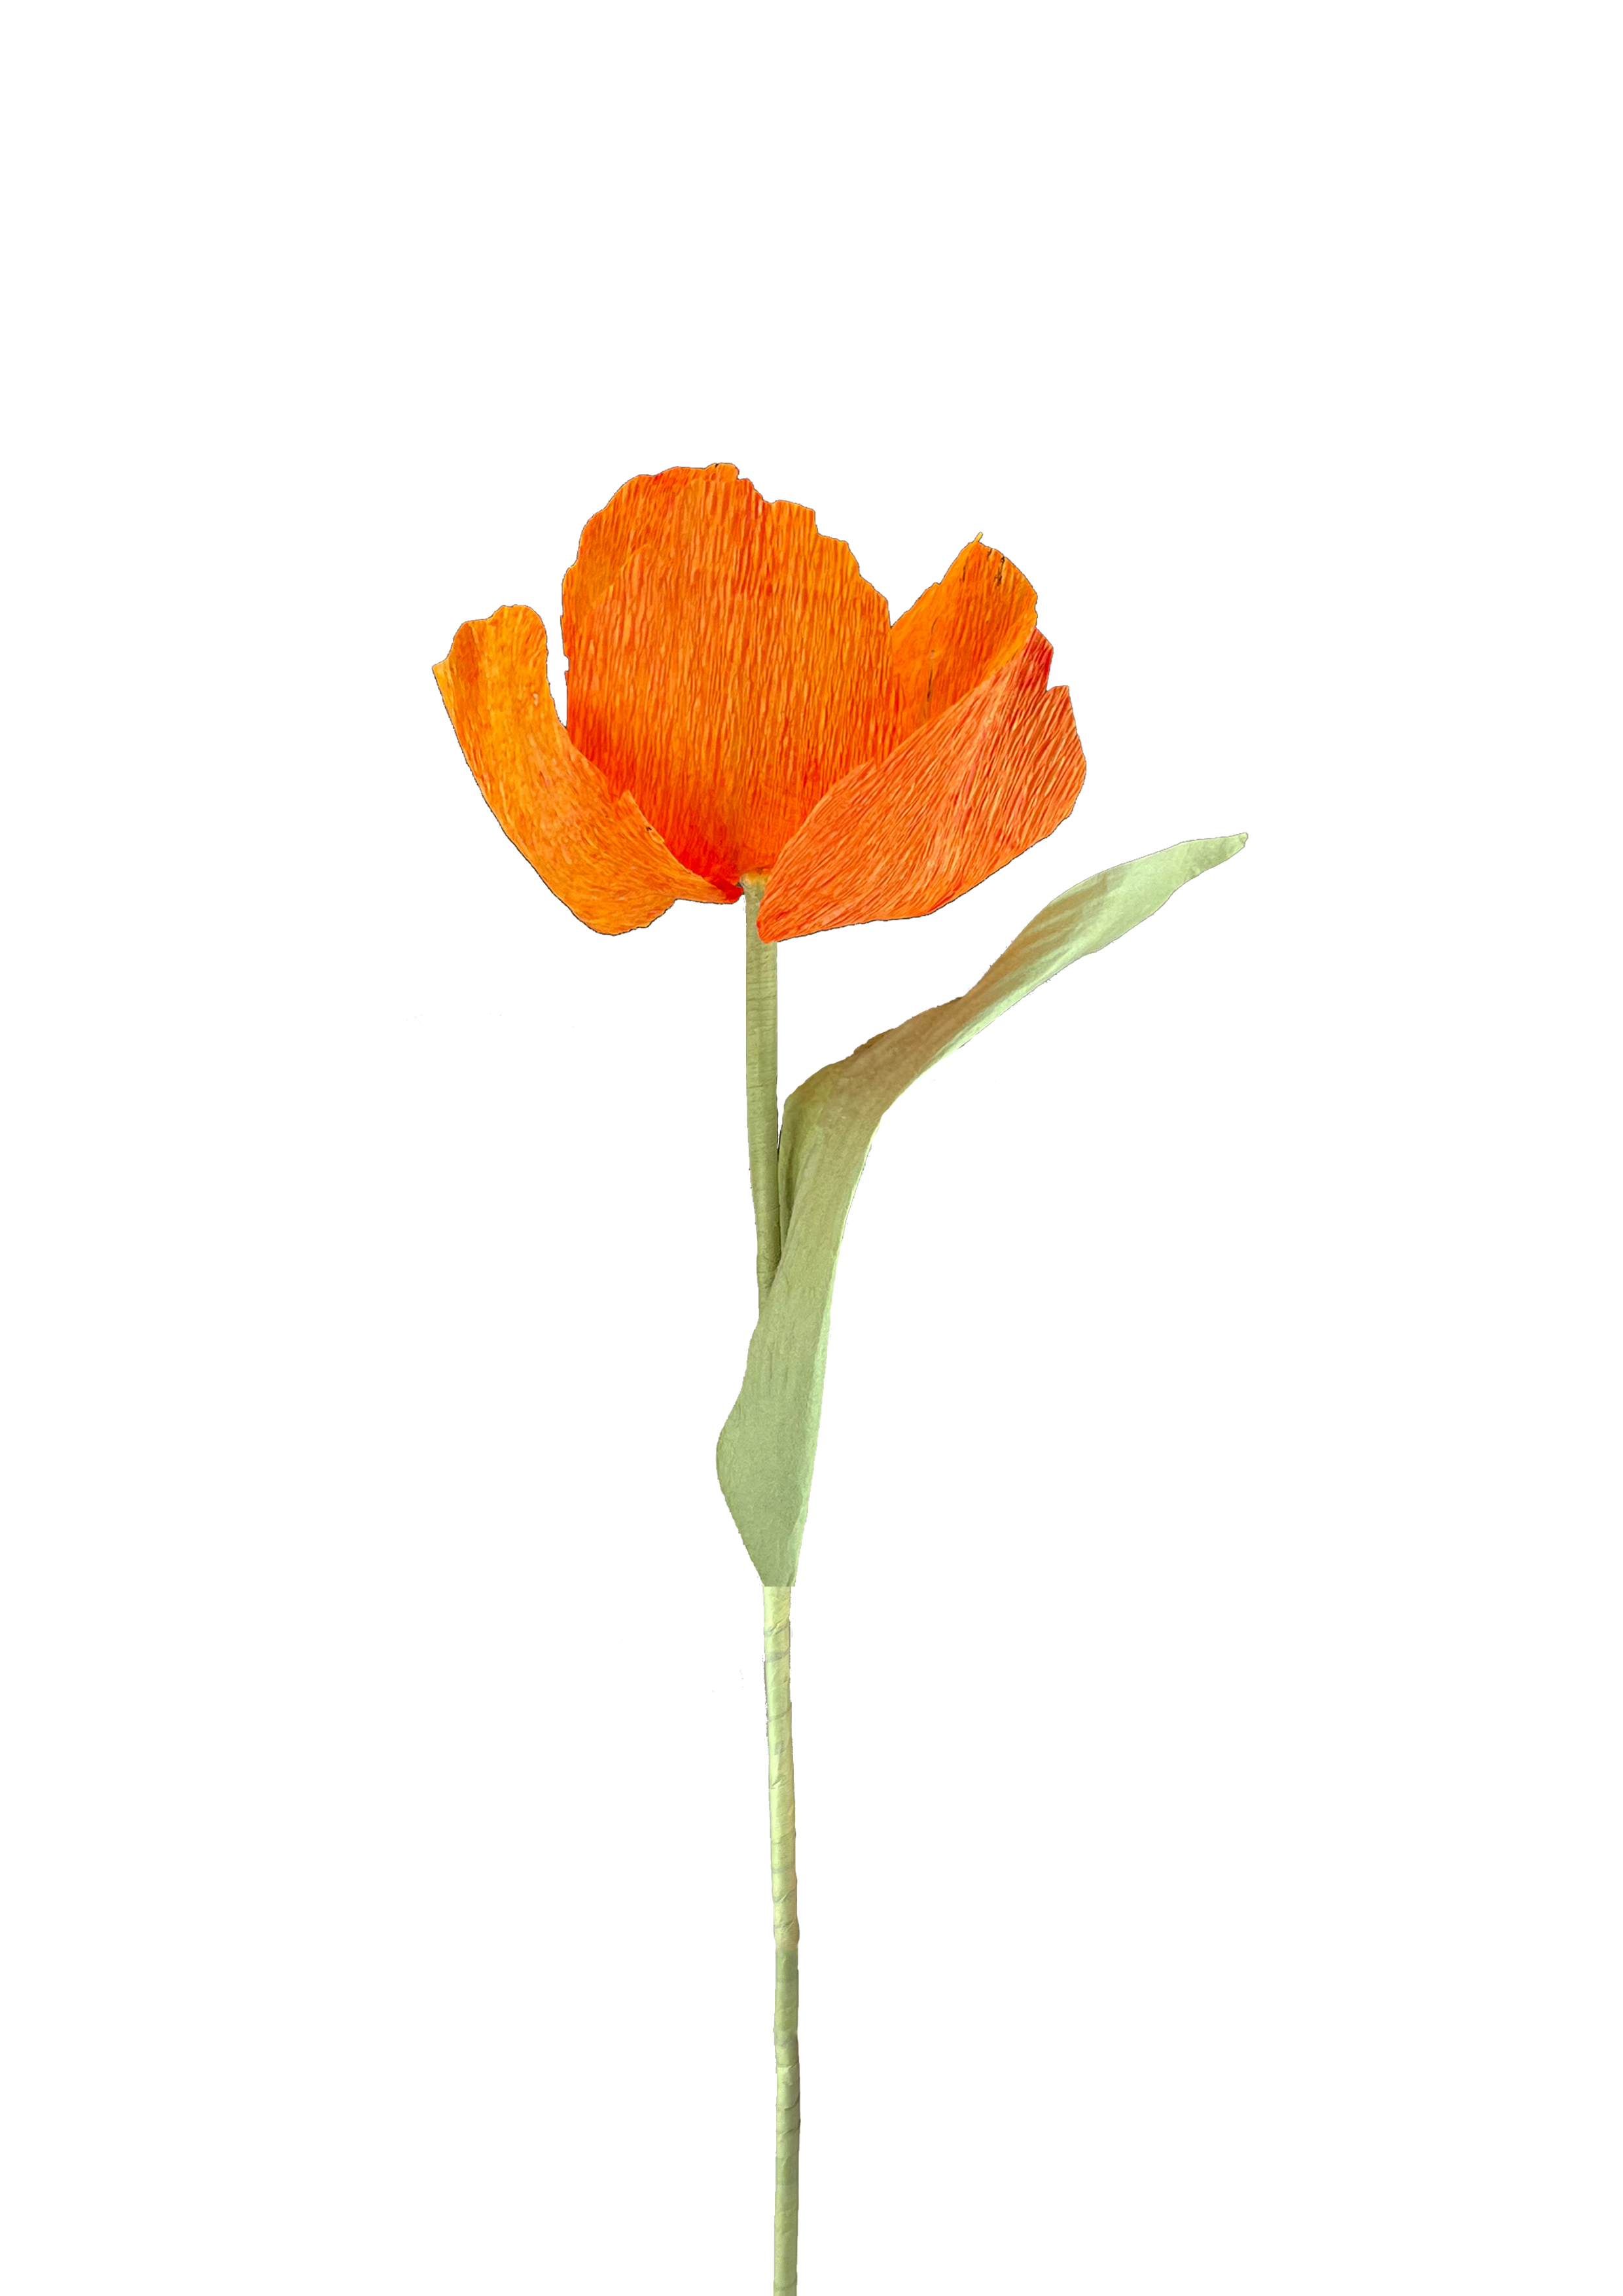 Tæt op af vores strålende orange tulipan i papir, der viser den livlige farve og detaljerede håndværk.